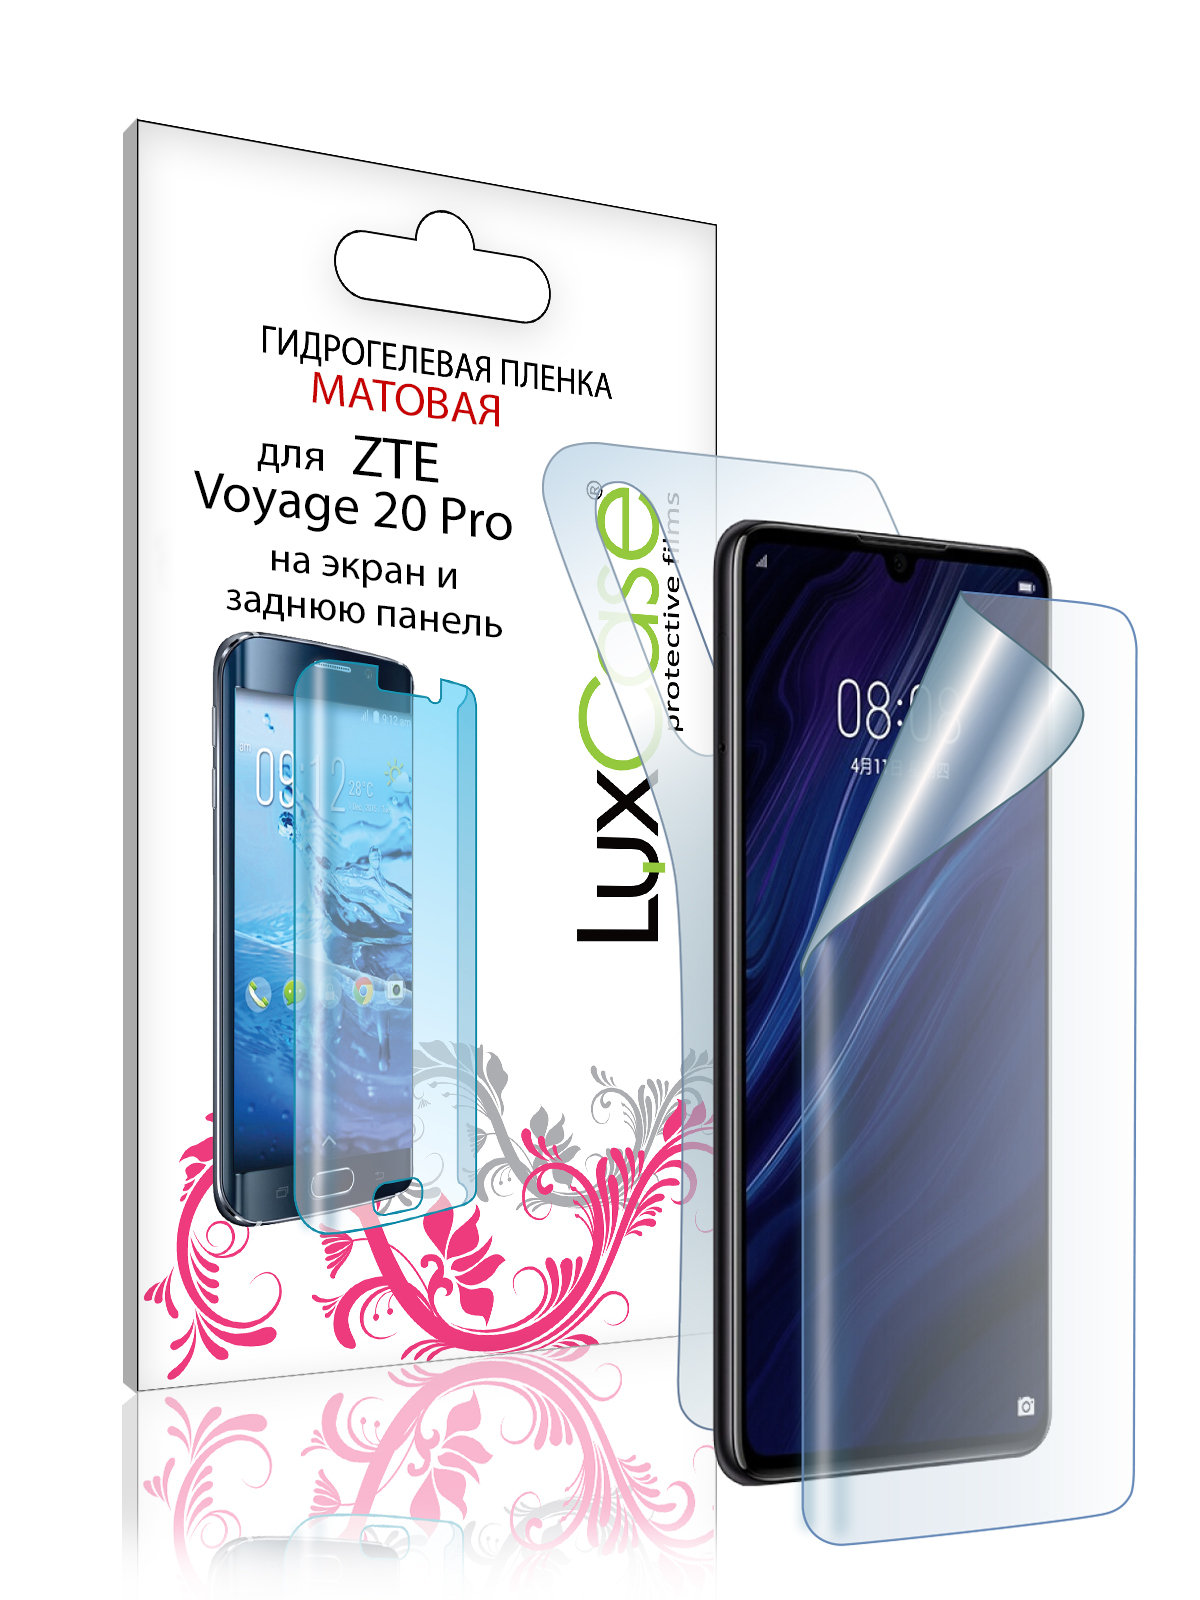 Гидрогелевая пленка LuxCase для ZTE Voyage 20 Pro 0.14mm Front and Back Matte 90338 гидрогелевая защитная пленка для телефона lg g4 матовая противоударная гибкое стекло на дисплей